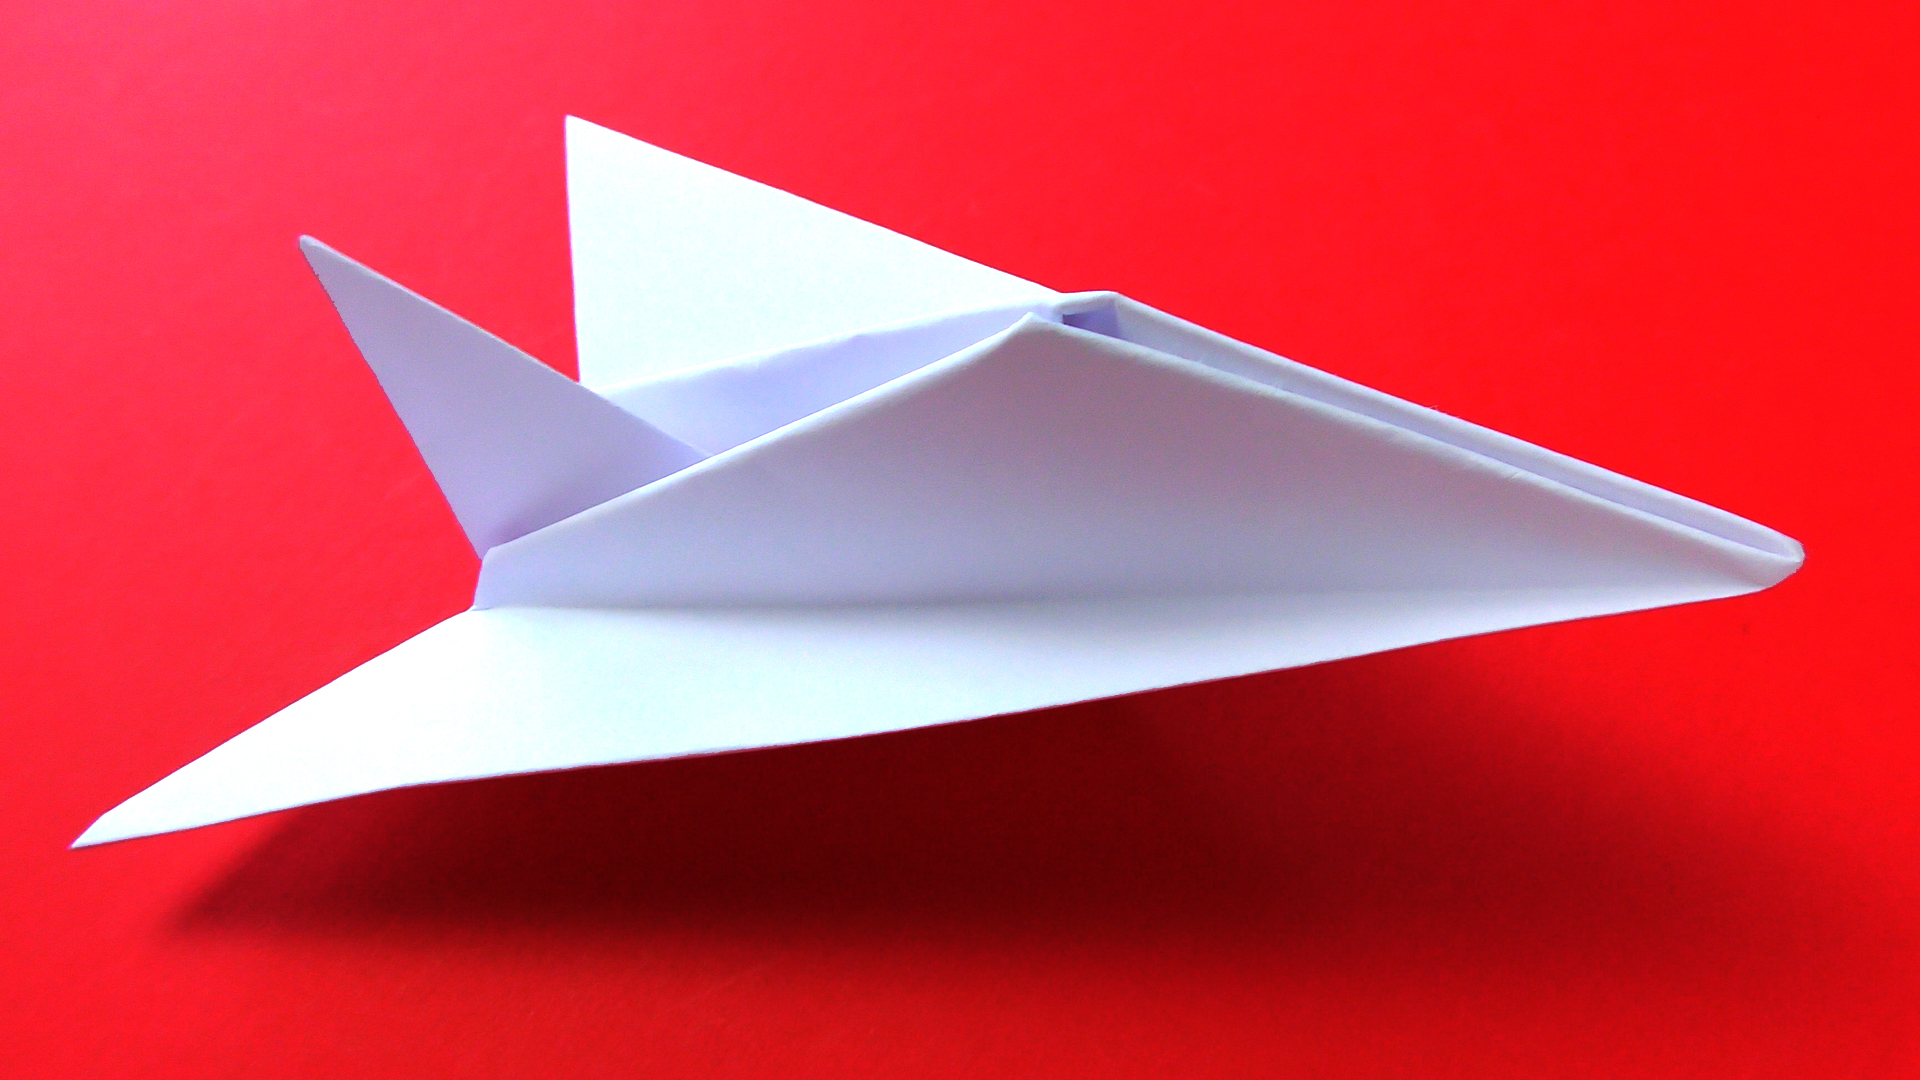 Как сделать самолет из бумаги - пошаговая инструкция.